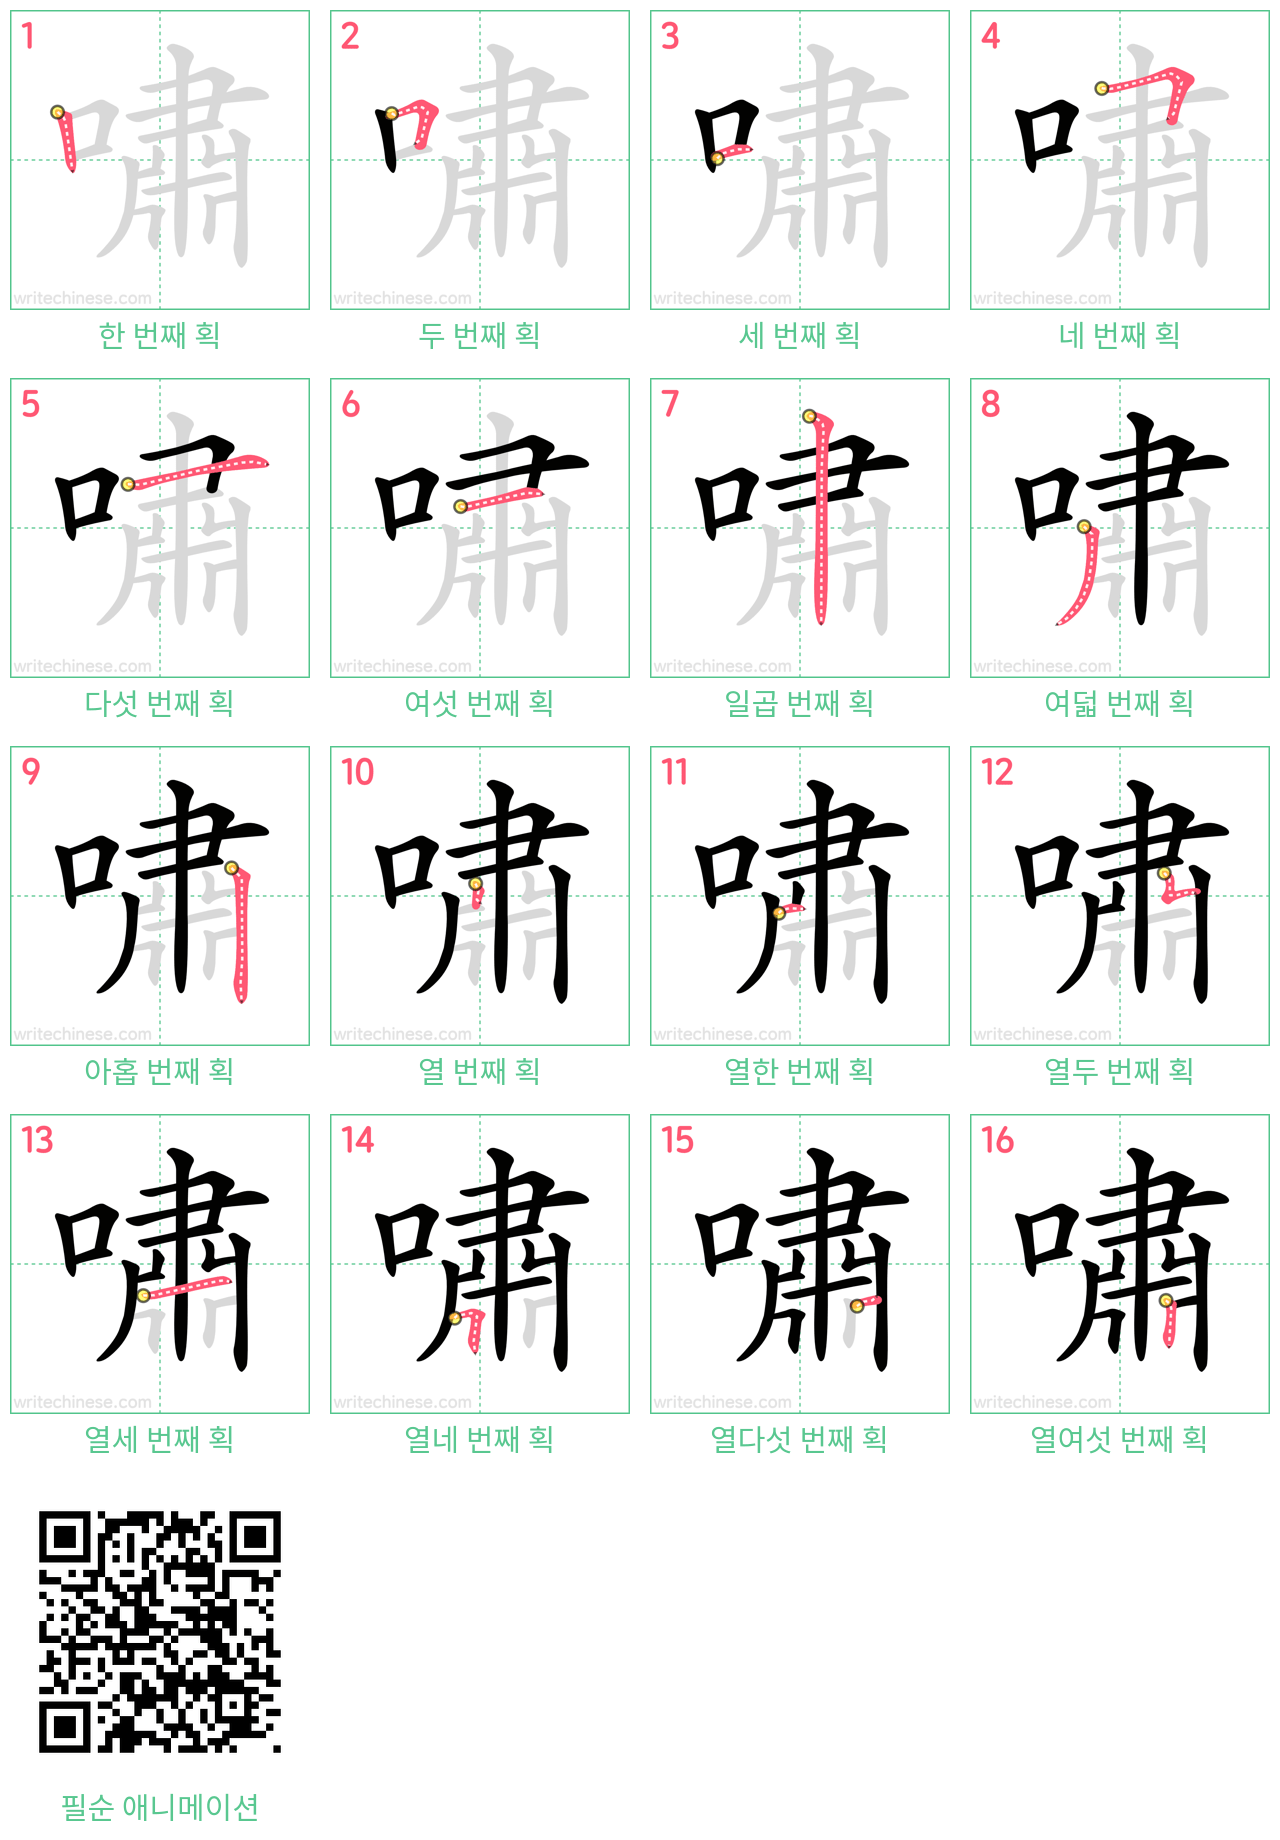 嘯 step-by-step stroke order diagrams